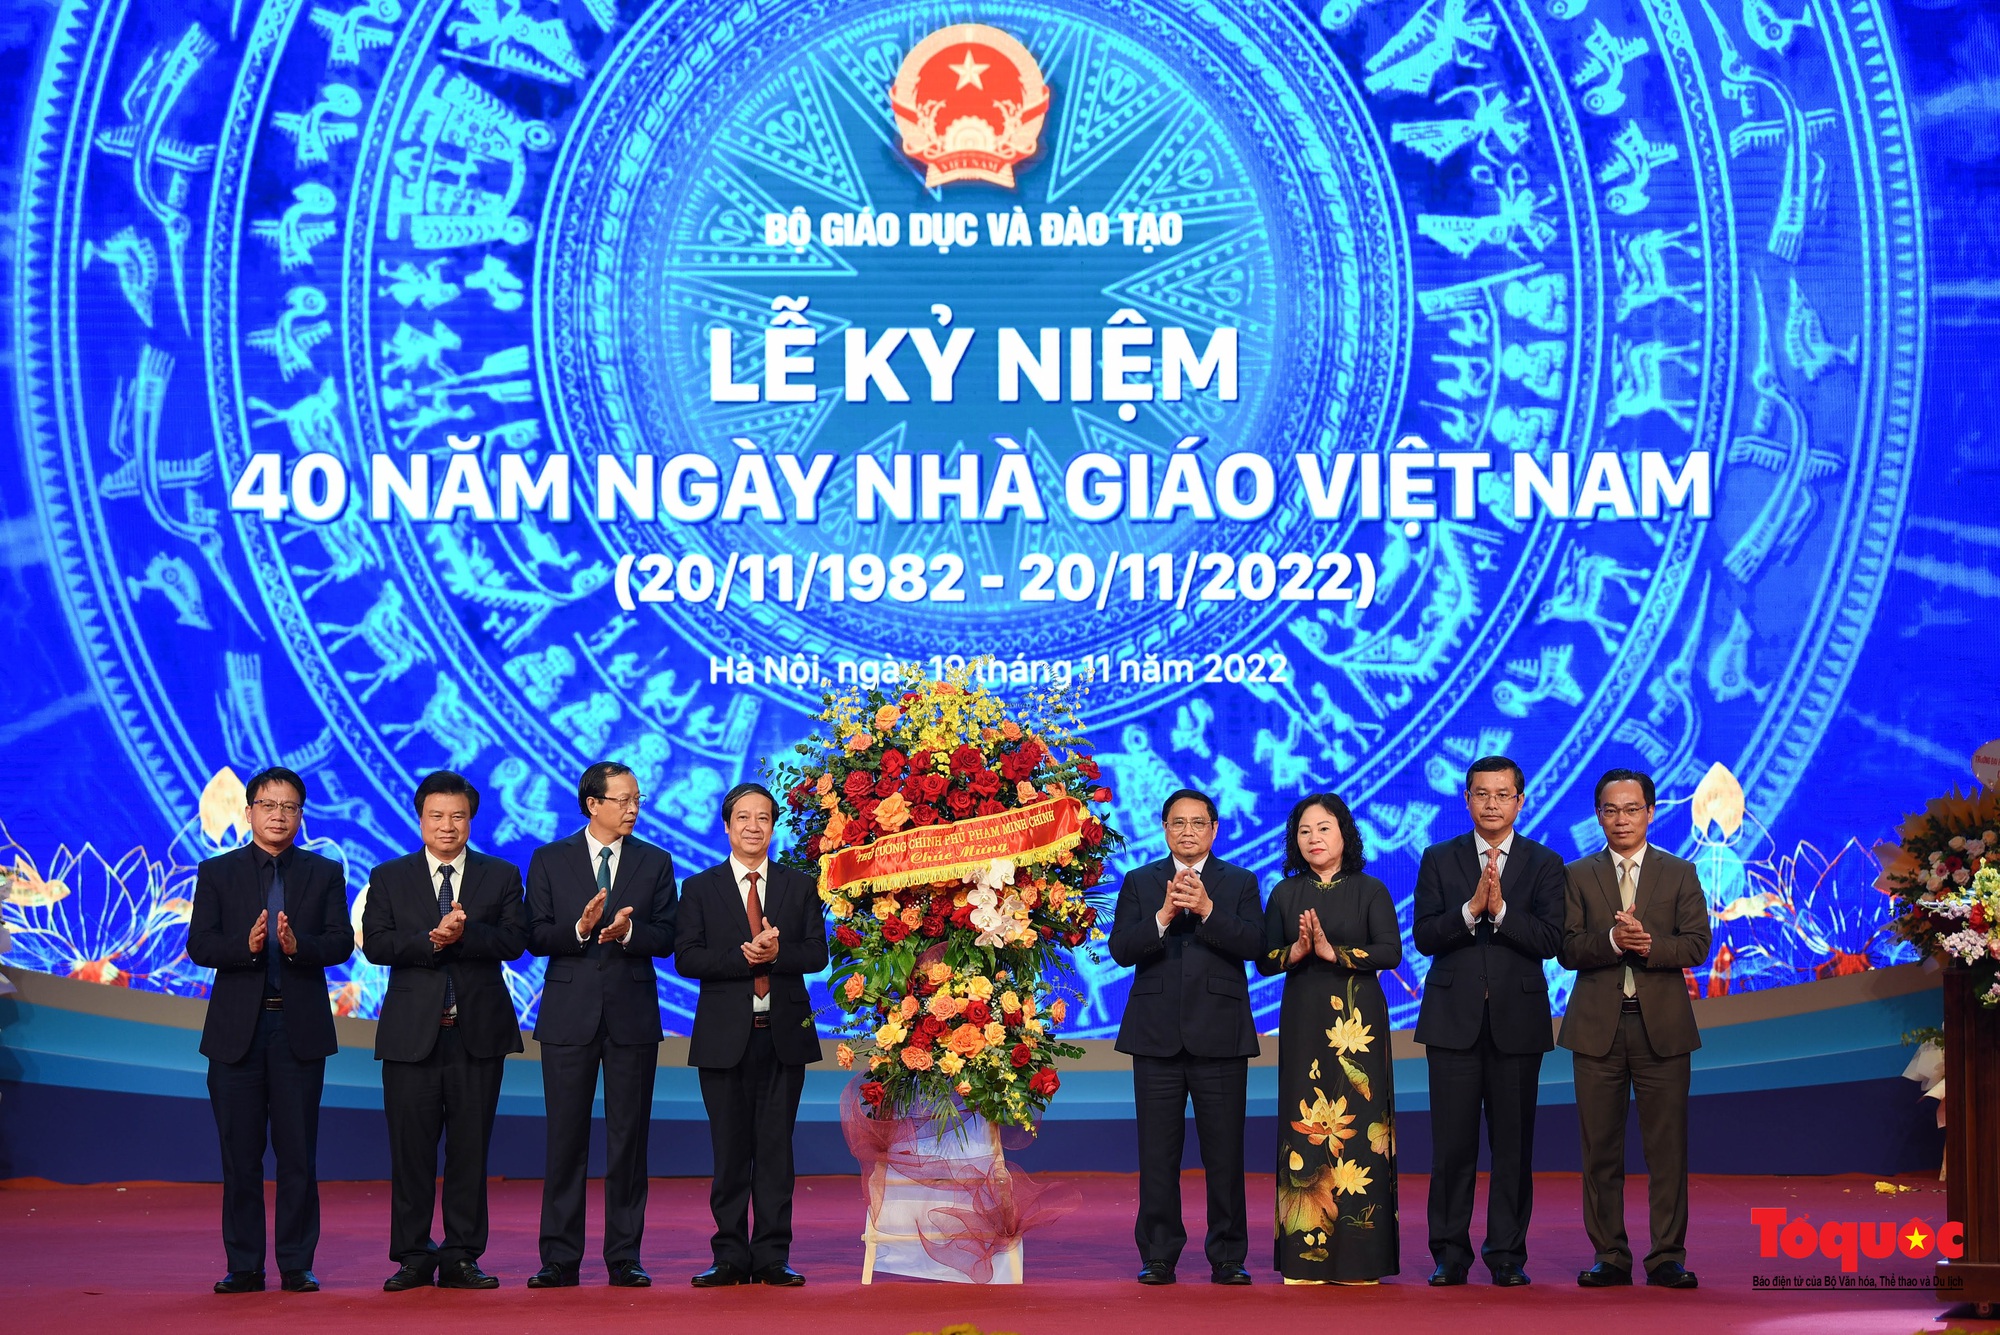 Long trọng lễ kỷ niệm 40 năm ngày Nhà giáo Việt Nam - Ảnh 5.